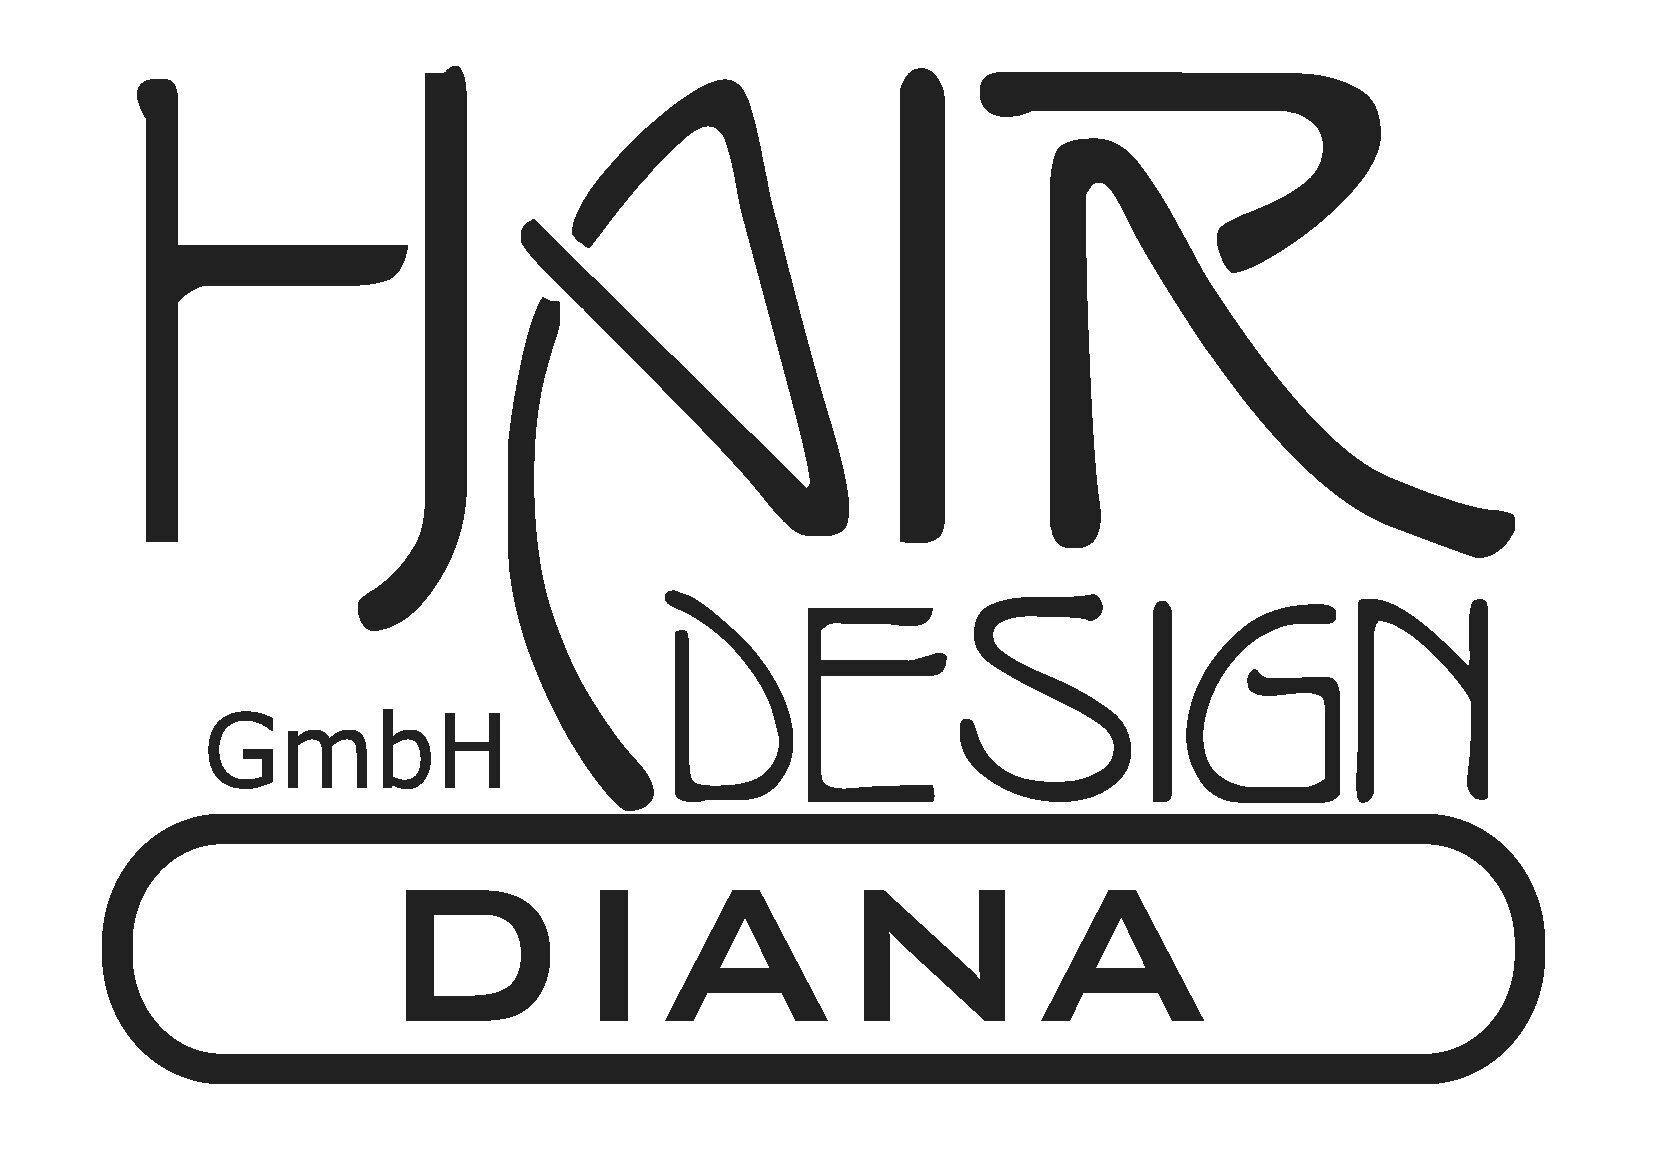 Kundenbild groß 3 Hair Design Diana GmbH